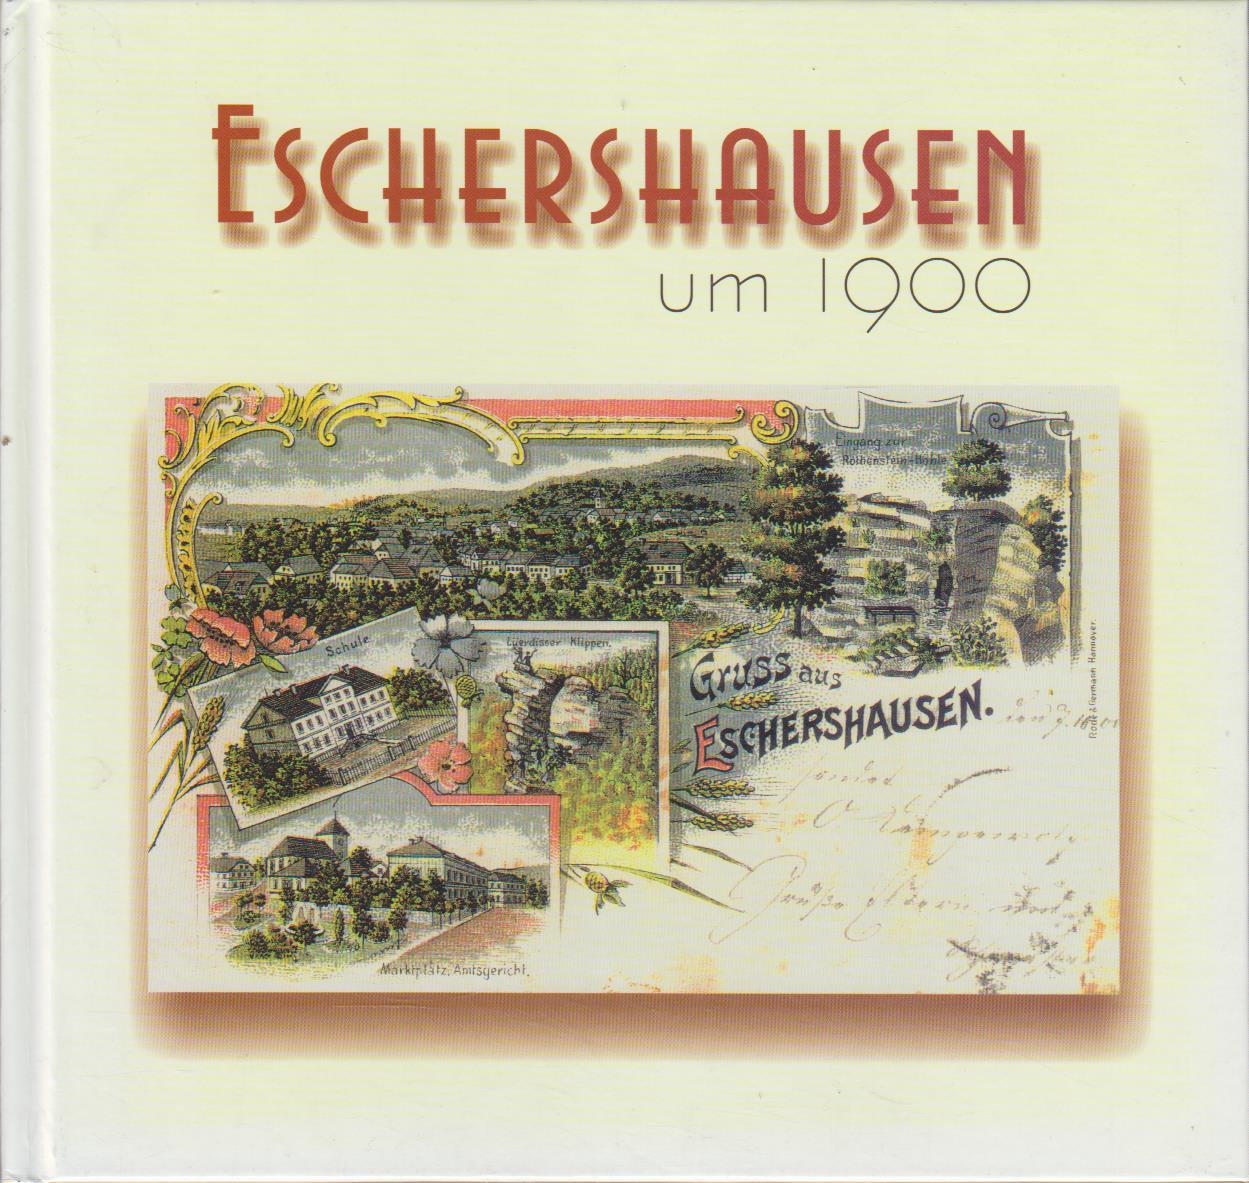 Eschershausen um 1900 / erarb. und zsgest. von Jutta Henze und Andreas Reuschel - Henze, Jutta und Andreas Reuschel